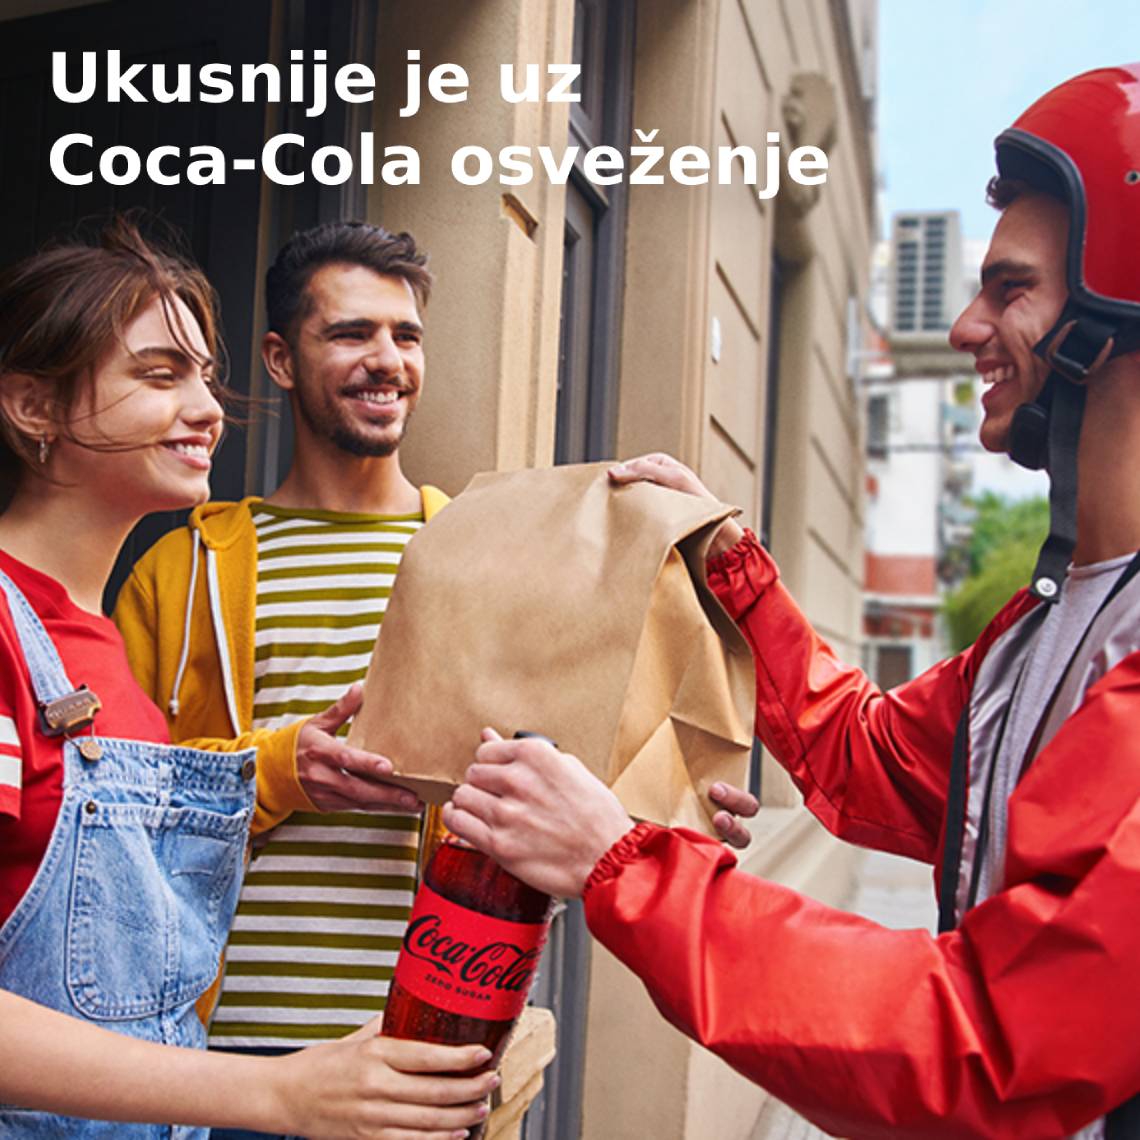 Coca-Cola uživanje